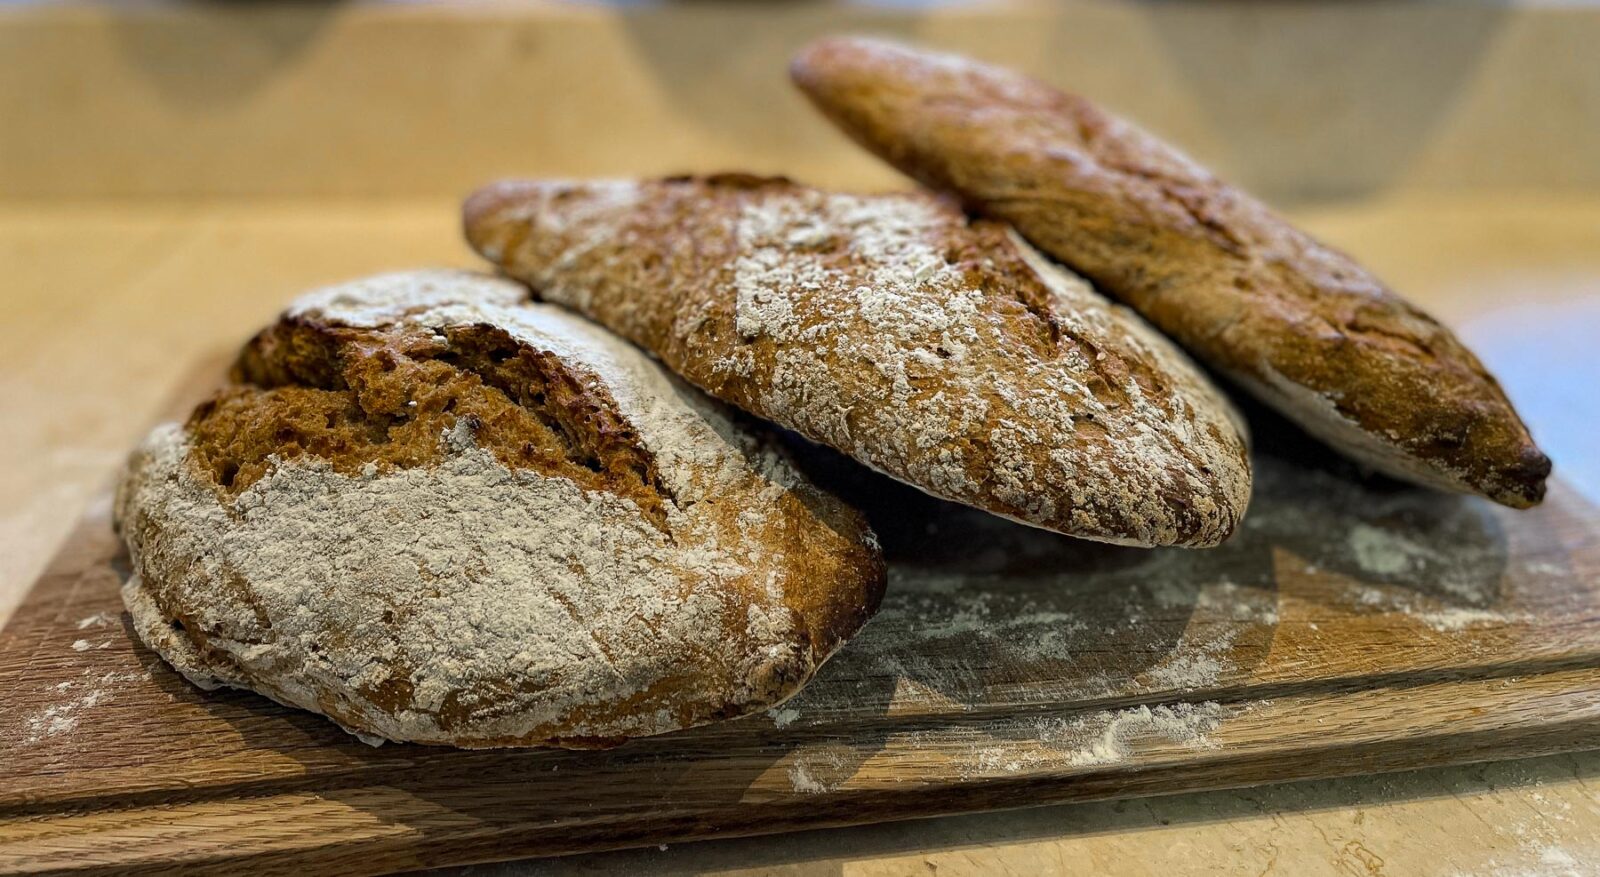 Three crusty sourdough breads on a chopping board.